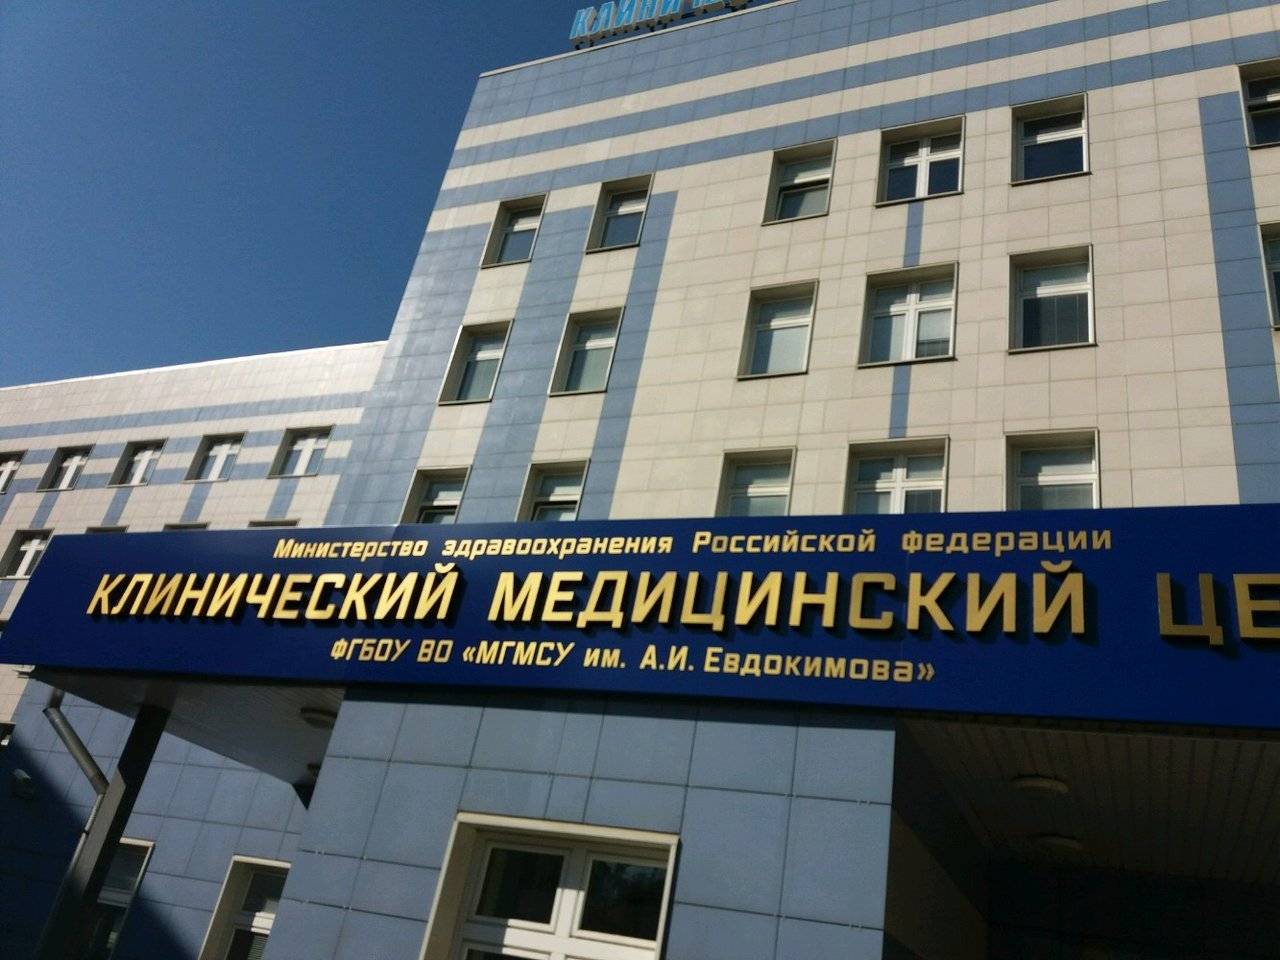 Клинический медицинский центр МГМСУ им. А.И. Евдокимова фото №1